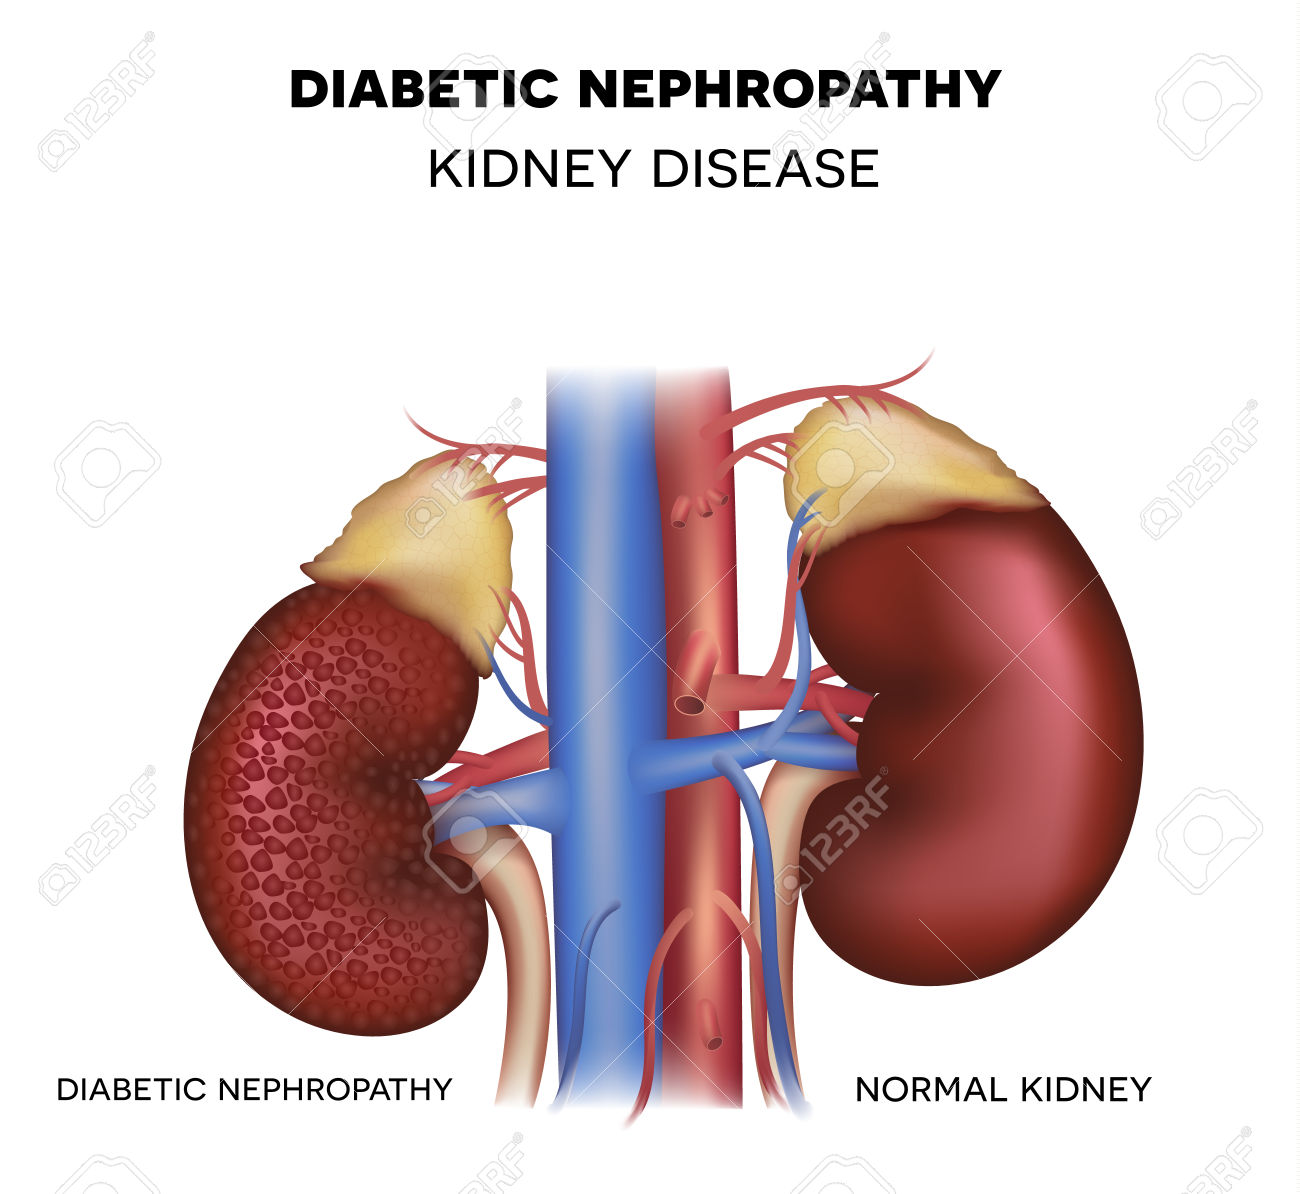 47999985-Diabetic-Nephropathy-kidney-disease-caused-by-Diabetes-Stock-Photo